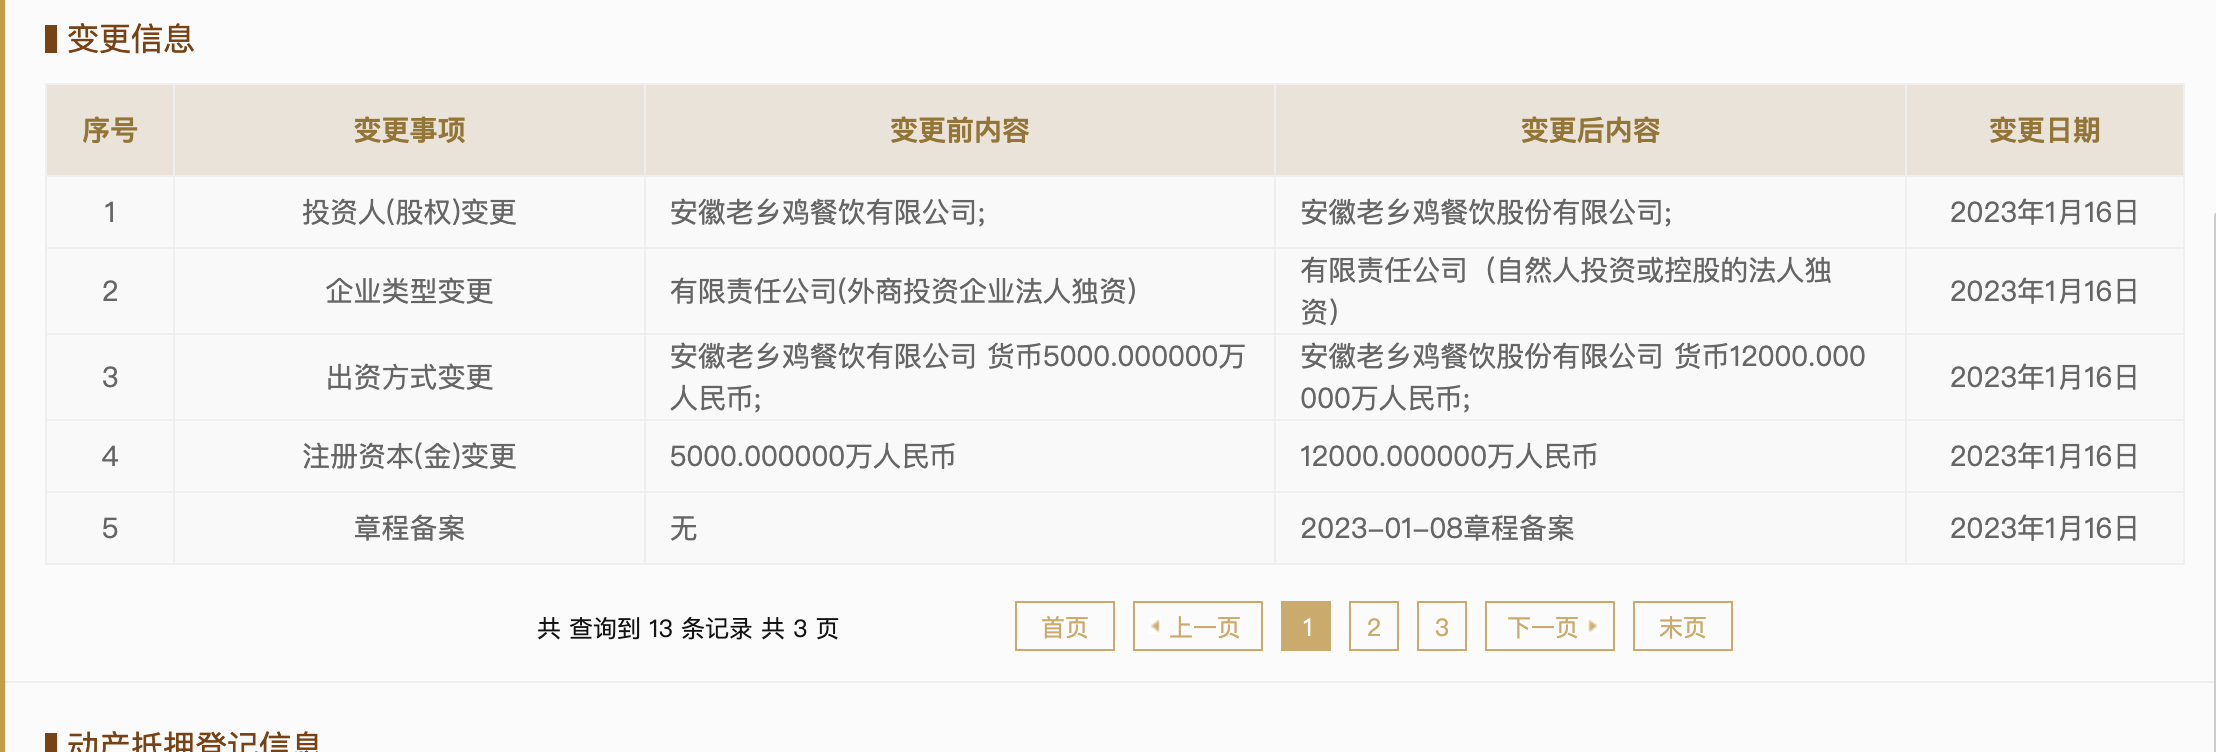 老乡鸡上海公司增资至1.2亿元